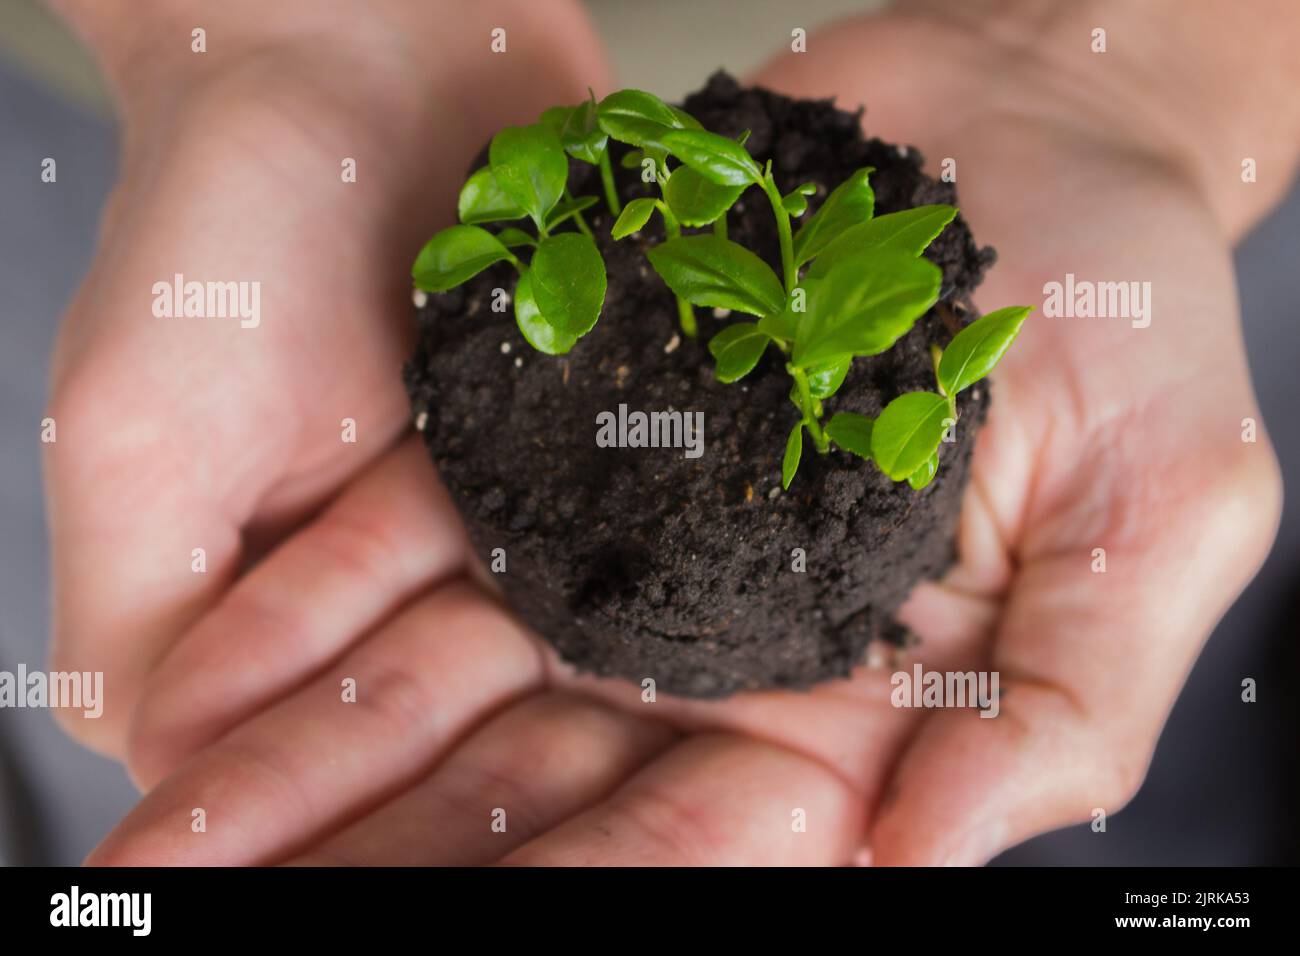 Piccola pianta verde in mani. Concetto di crescita. Piante crescenti. Contesto agricolo. Mani che si prendono cura di piante molto piccole. Foto Stock